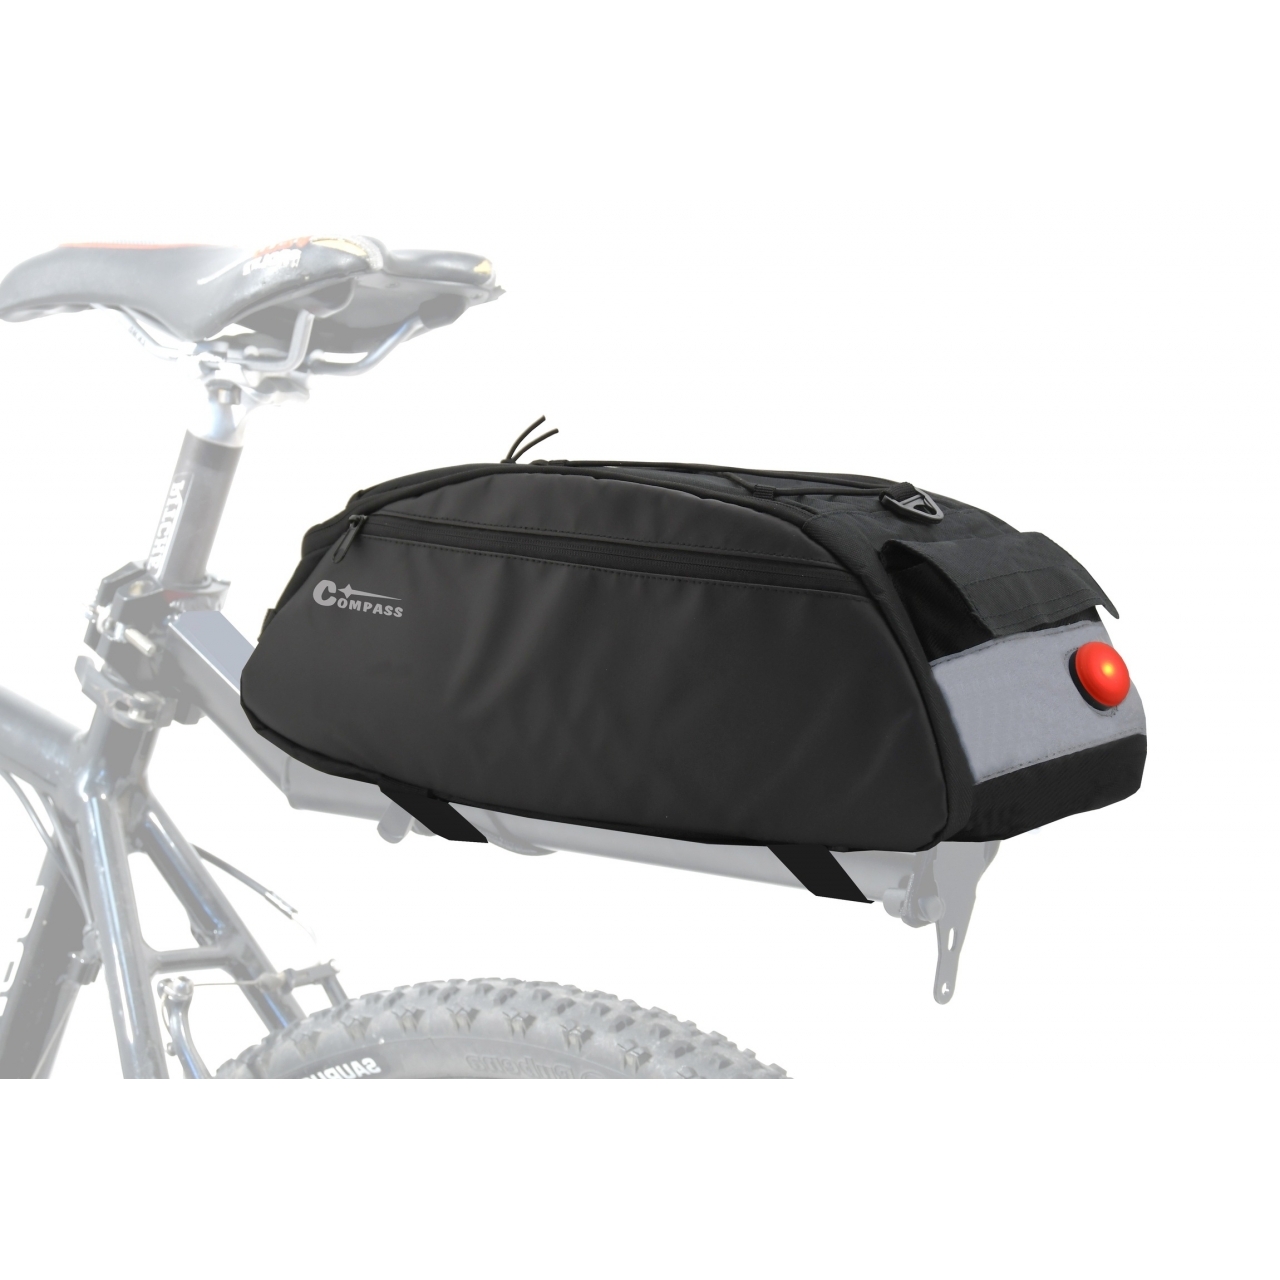 Cyklotaška na zadní nosič se zadním LED světlem Compass - černá-šedá